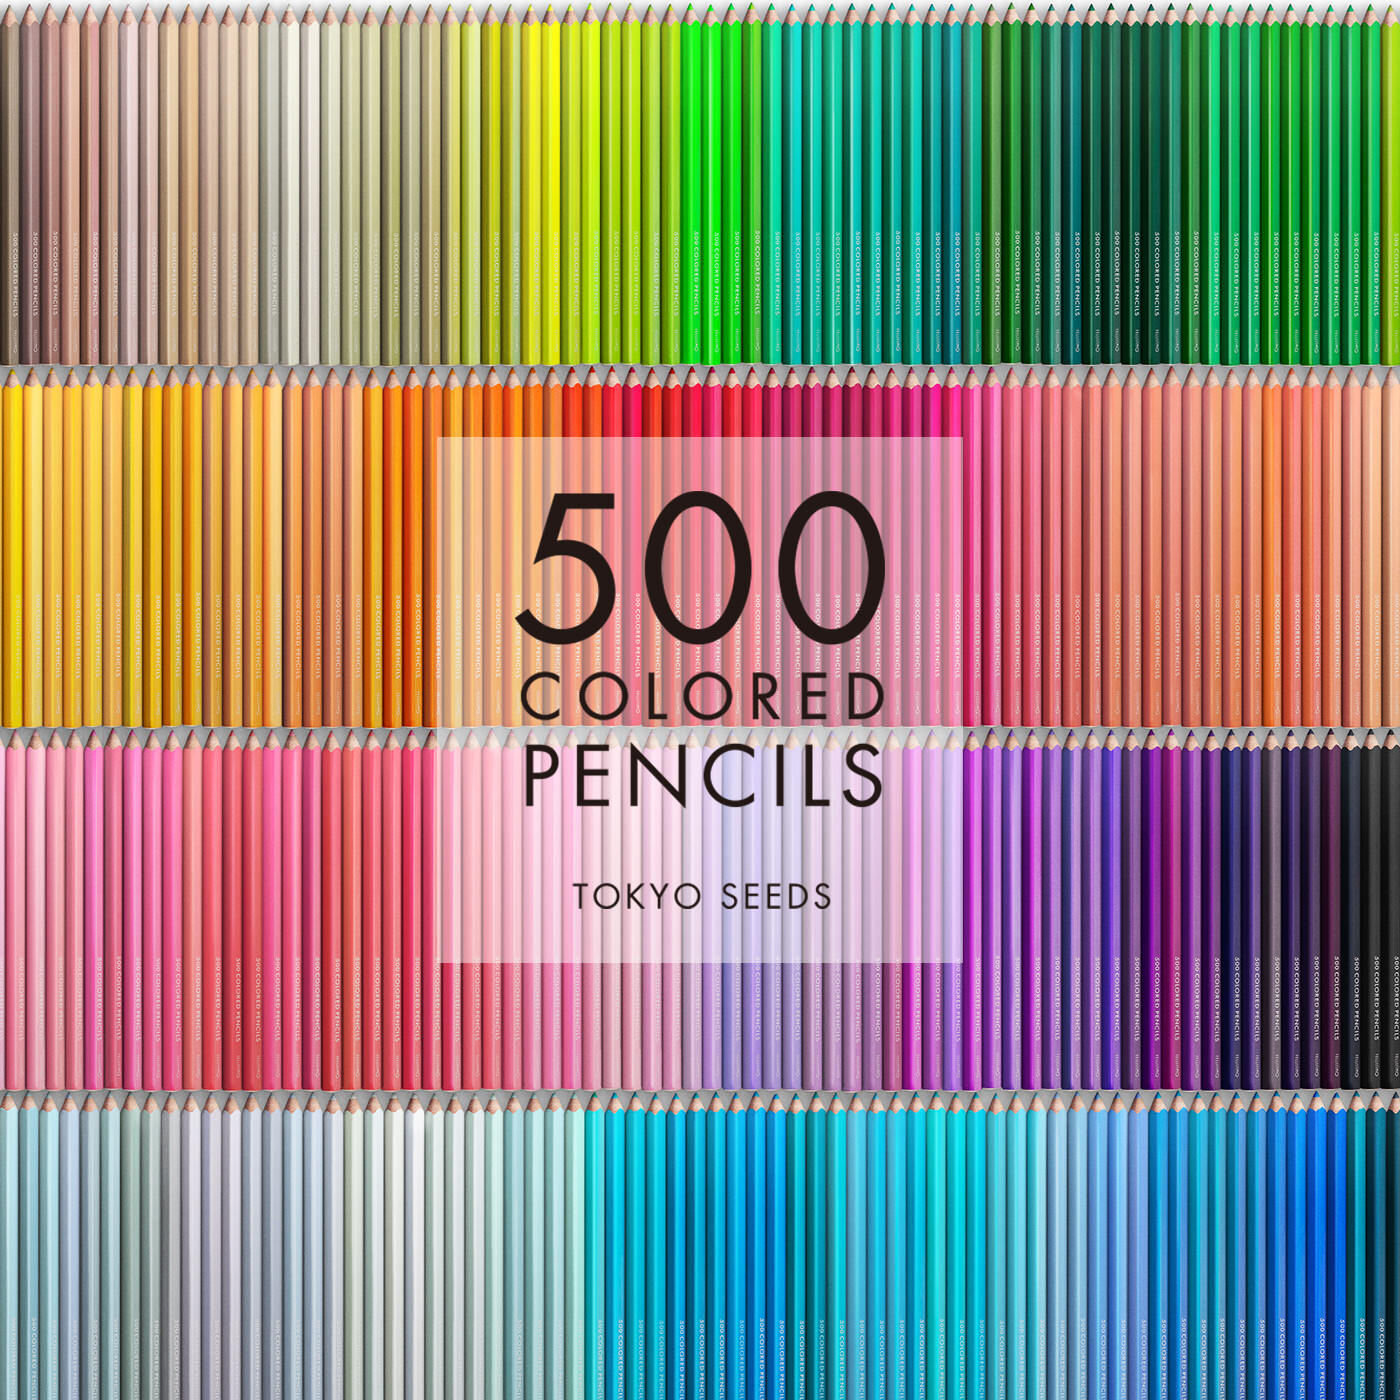 Real Stock|【87/500 SCARLET POUT】500色の色えんぴつ TOKYO SEEDS|1992年、世界初の「500色」という膨大な色数の色えんぴつが誕生して以来、その販売数は発売当初から合わせると、世界55ヵ国10万セット以上。今回、メイド・イン・ジャパンにこだわり、すべてが新しく生まれ変わって登場しました。